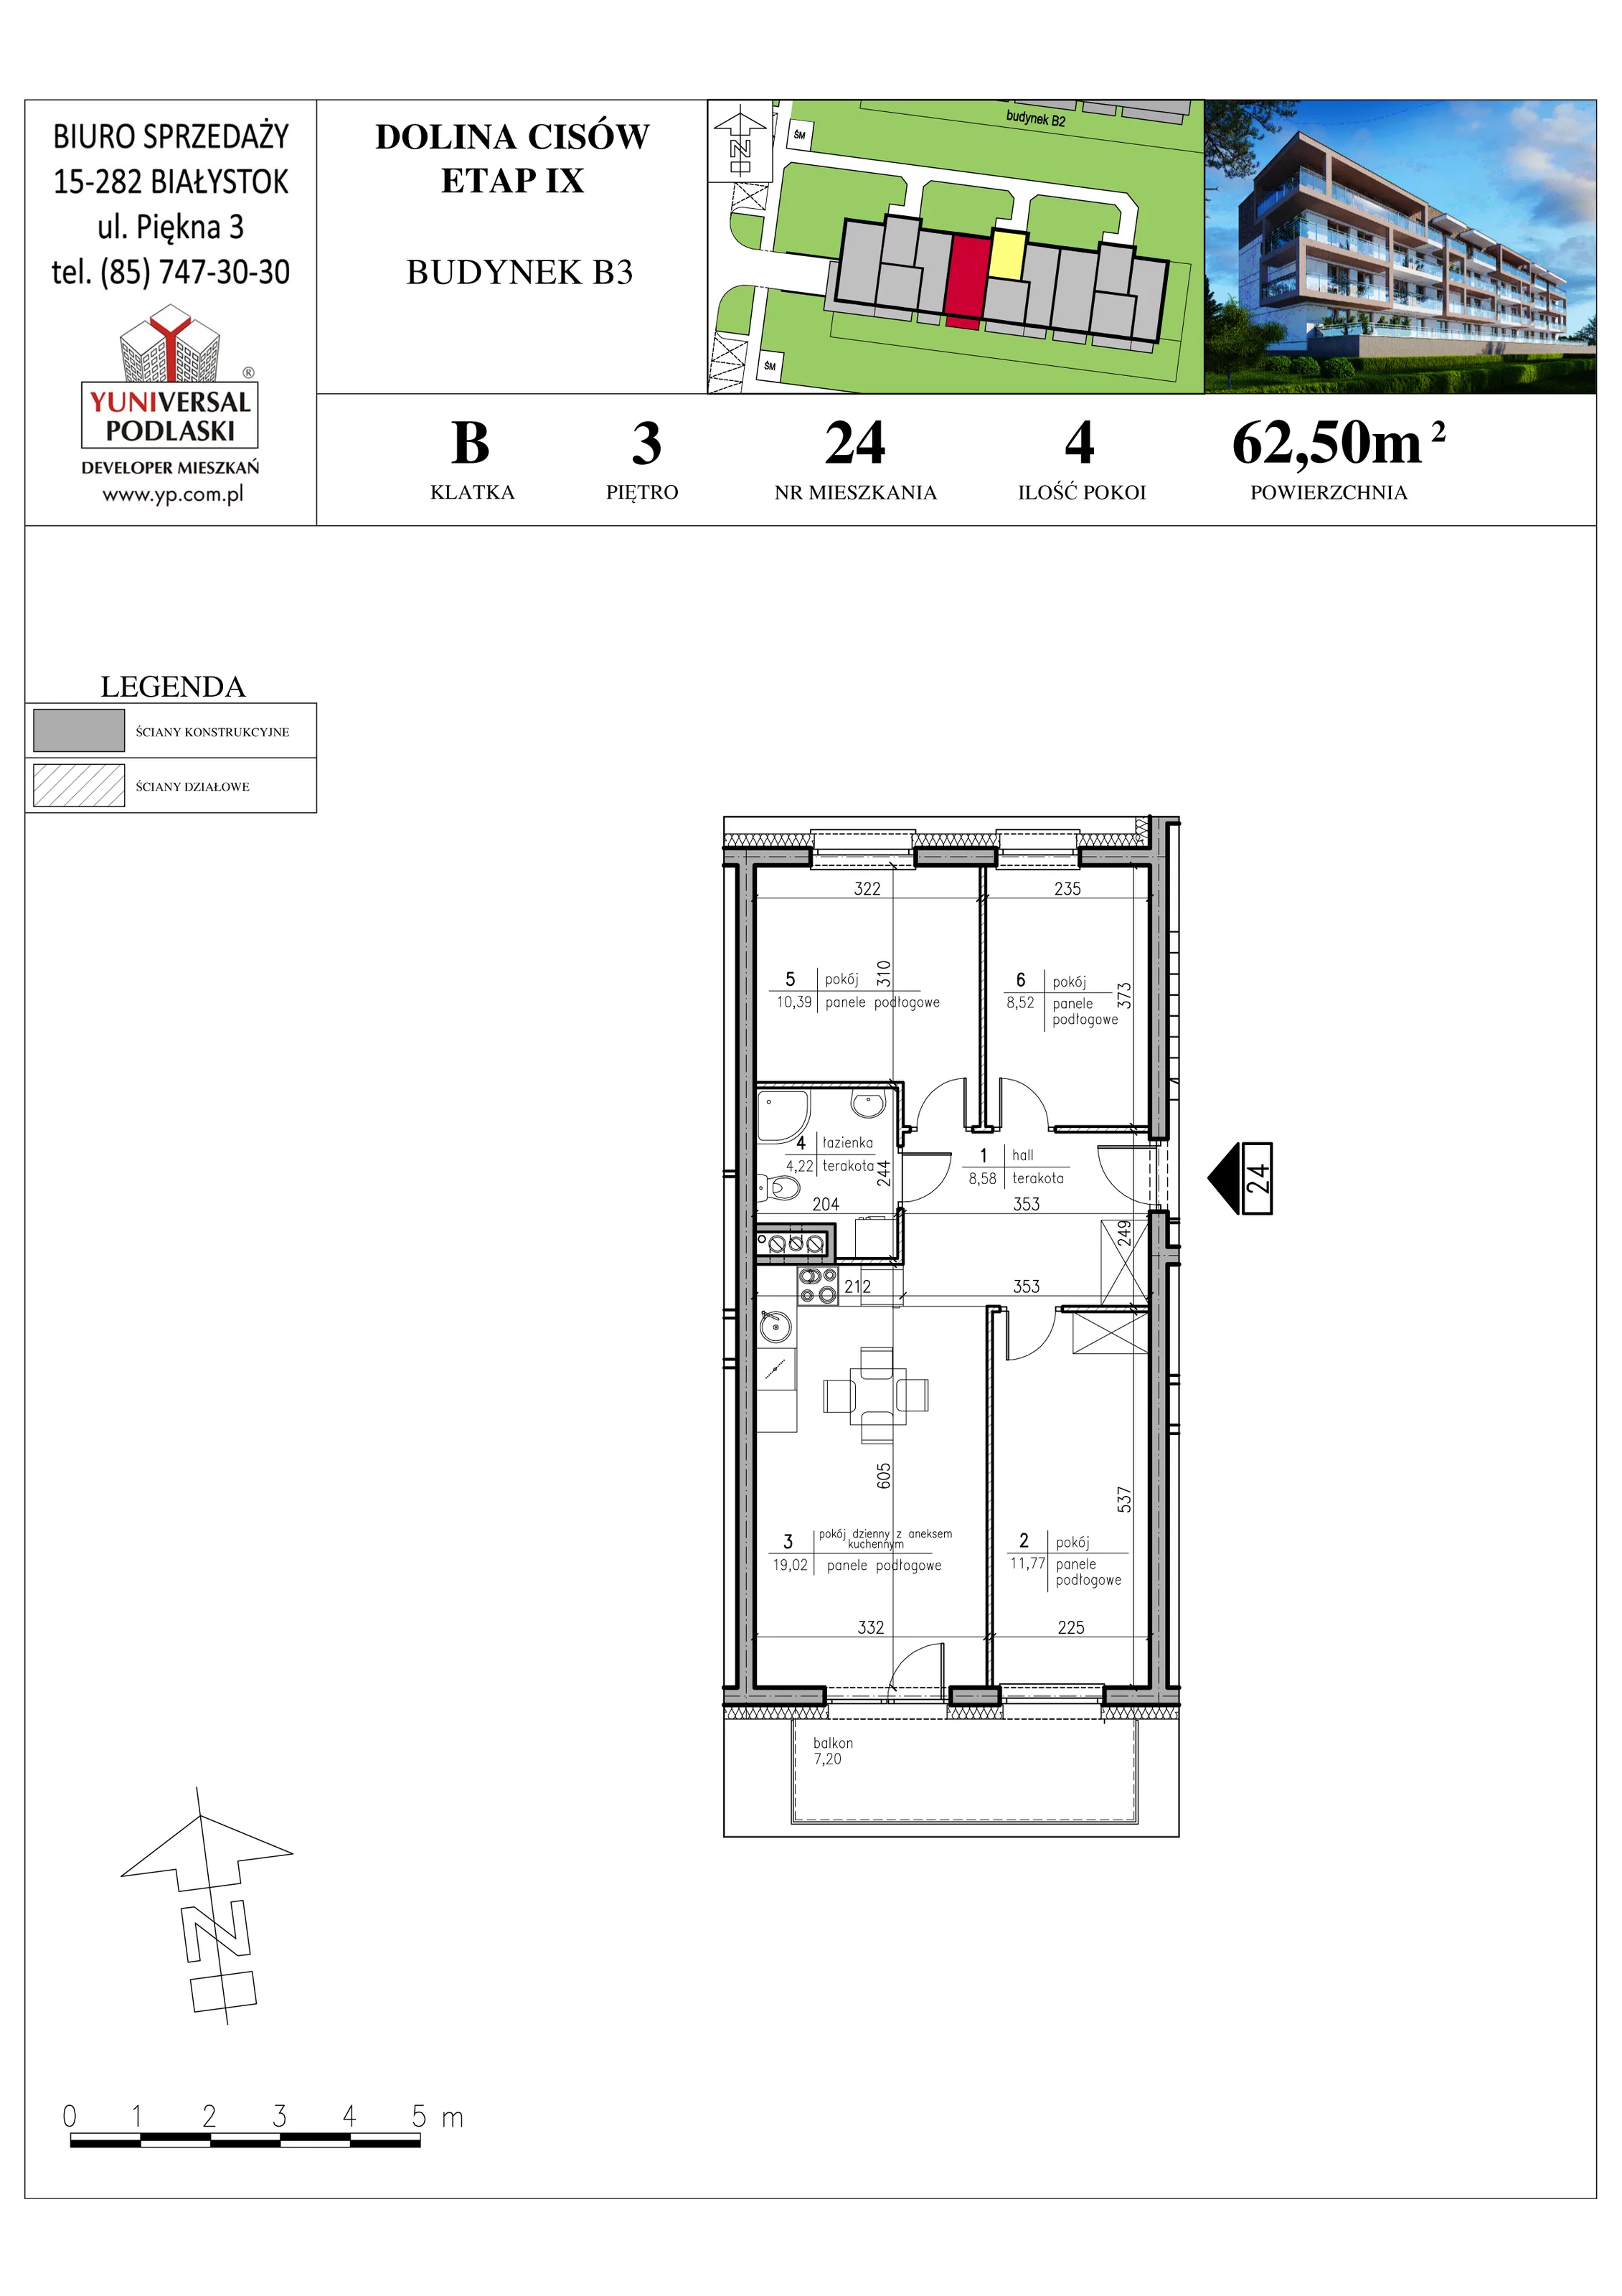 Mieszkanie 62,50 m², piętro 3, oferta nr B3-24, Osiedle Dolina Cisów - Etap IX, Wasilków, ul. Nadawki